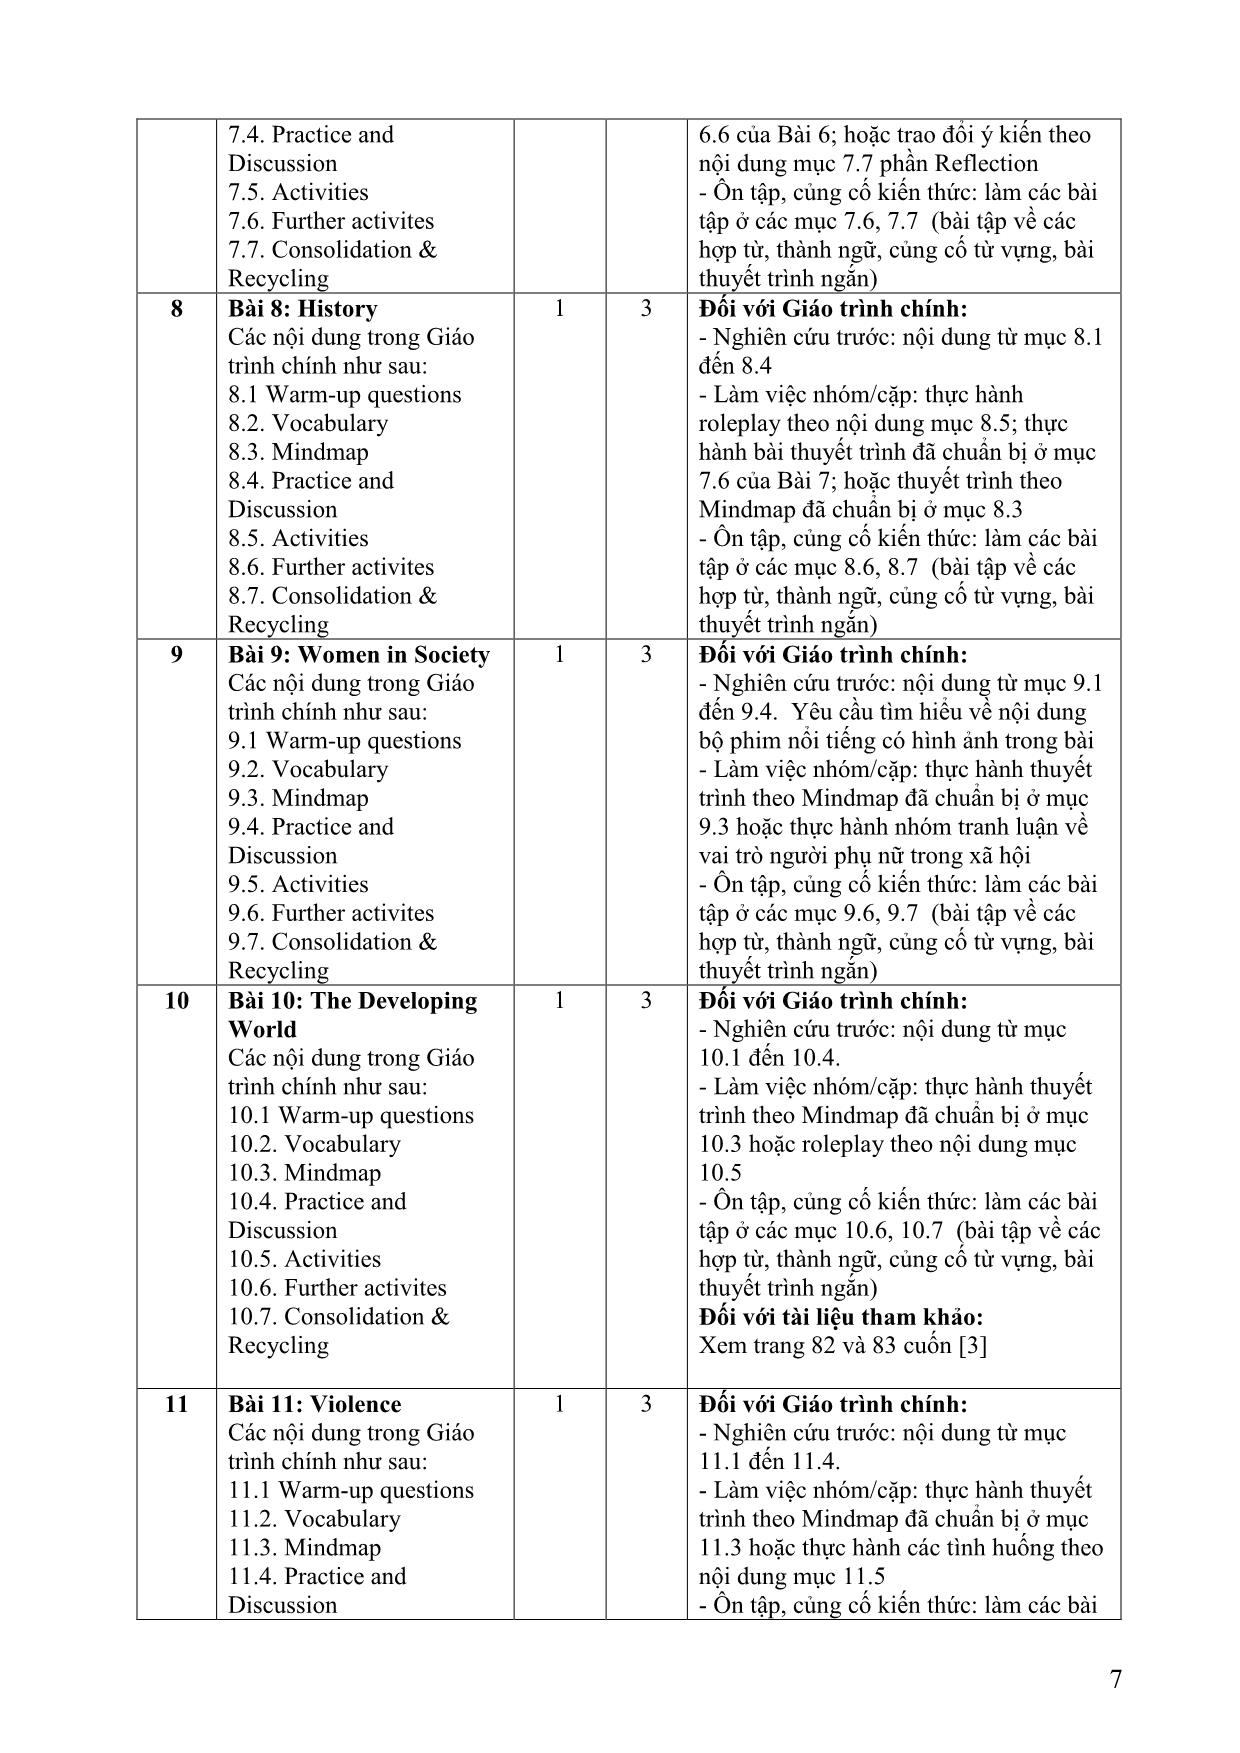 Đề cương chi tiết học phần Nói tiếng Anh 2 (Speaking 2) trang 7